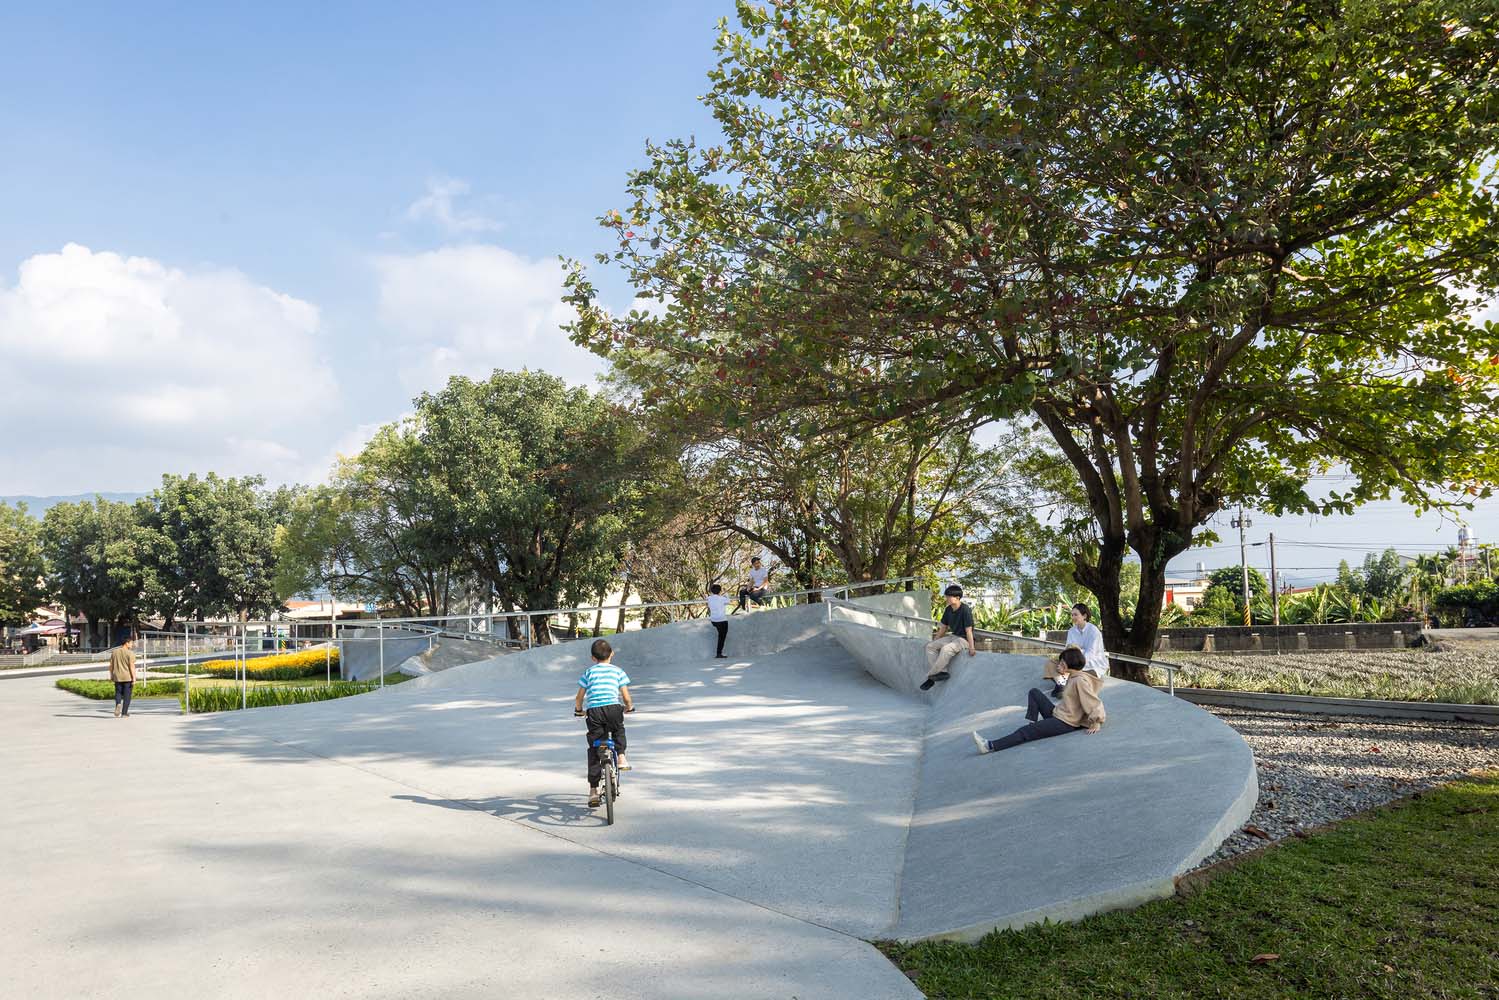 南华微光公园,Atelier Let's + JR Architects,中国台湾屏东公园,公园景观设计案例